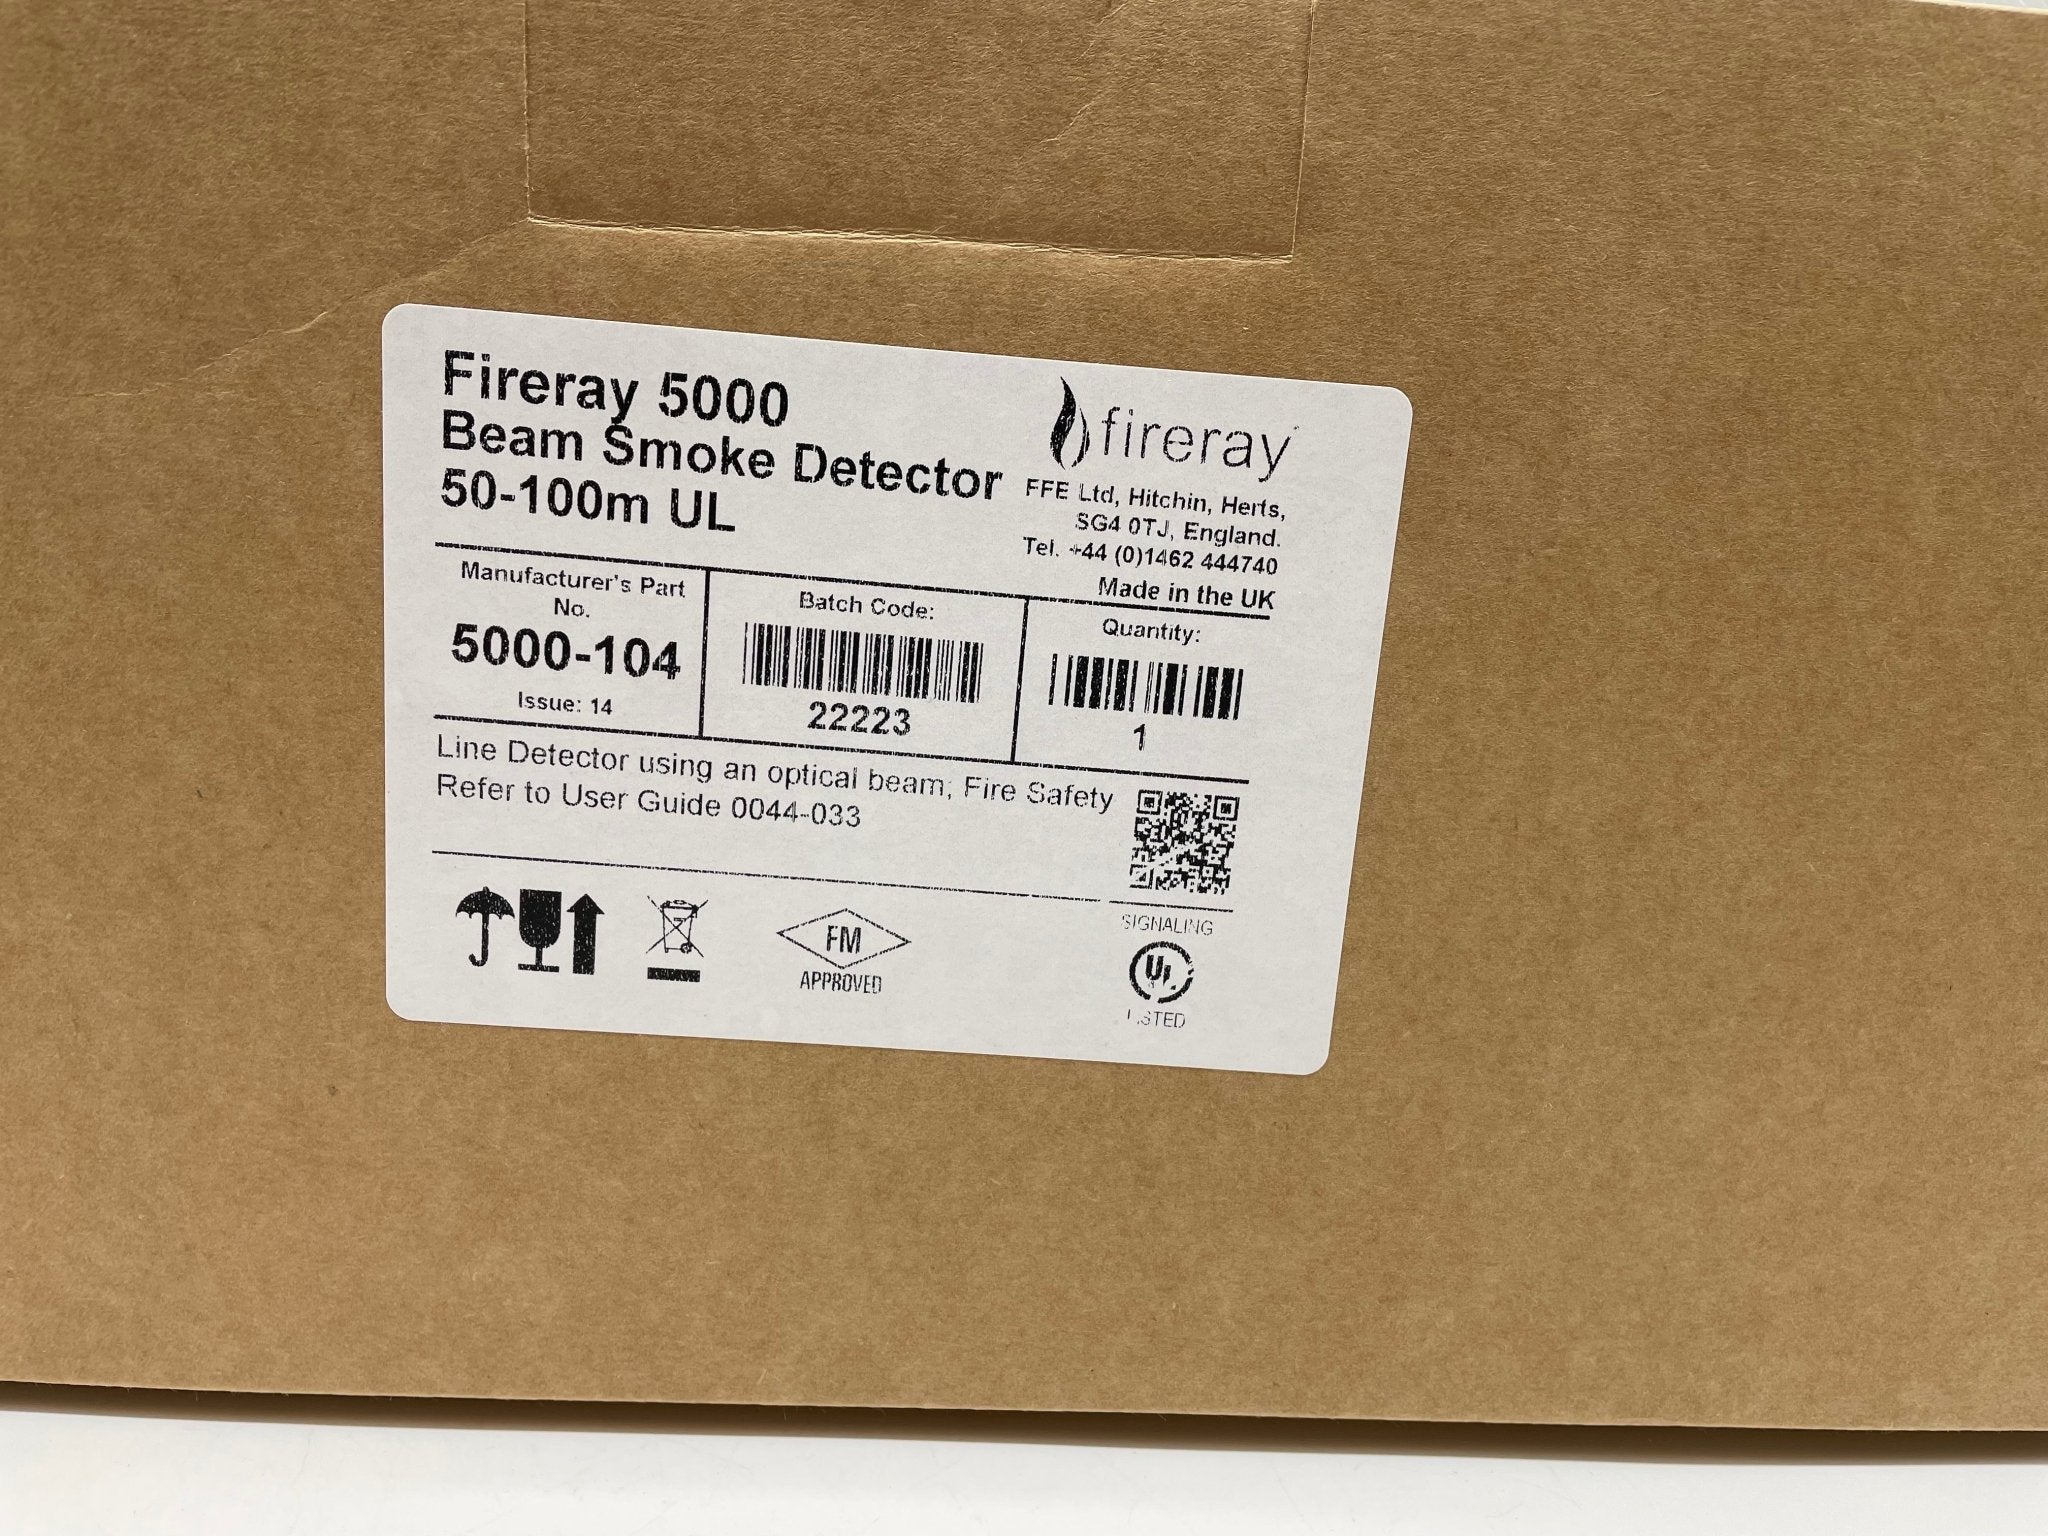 Fireray 5000-104 - The Fire Alarm Supplier